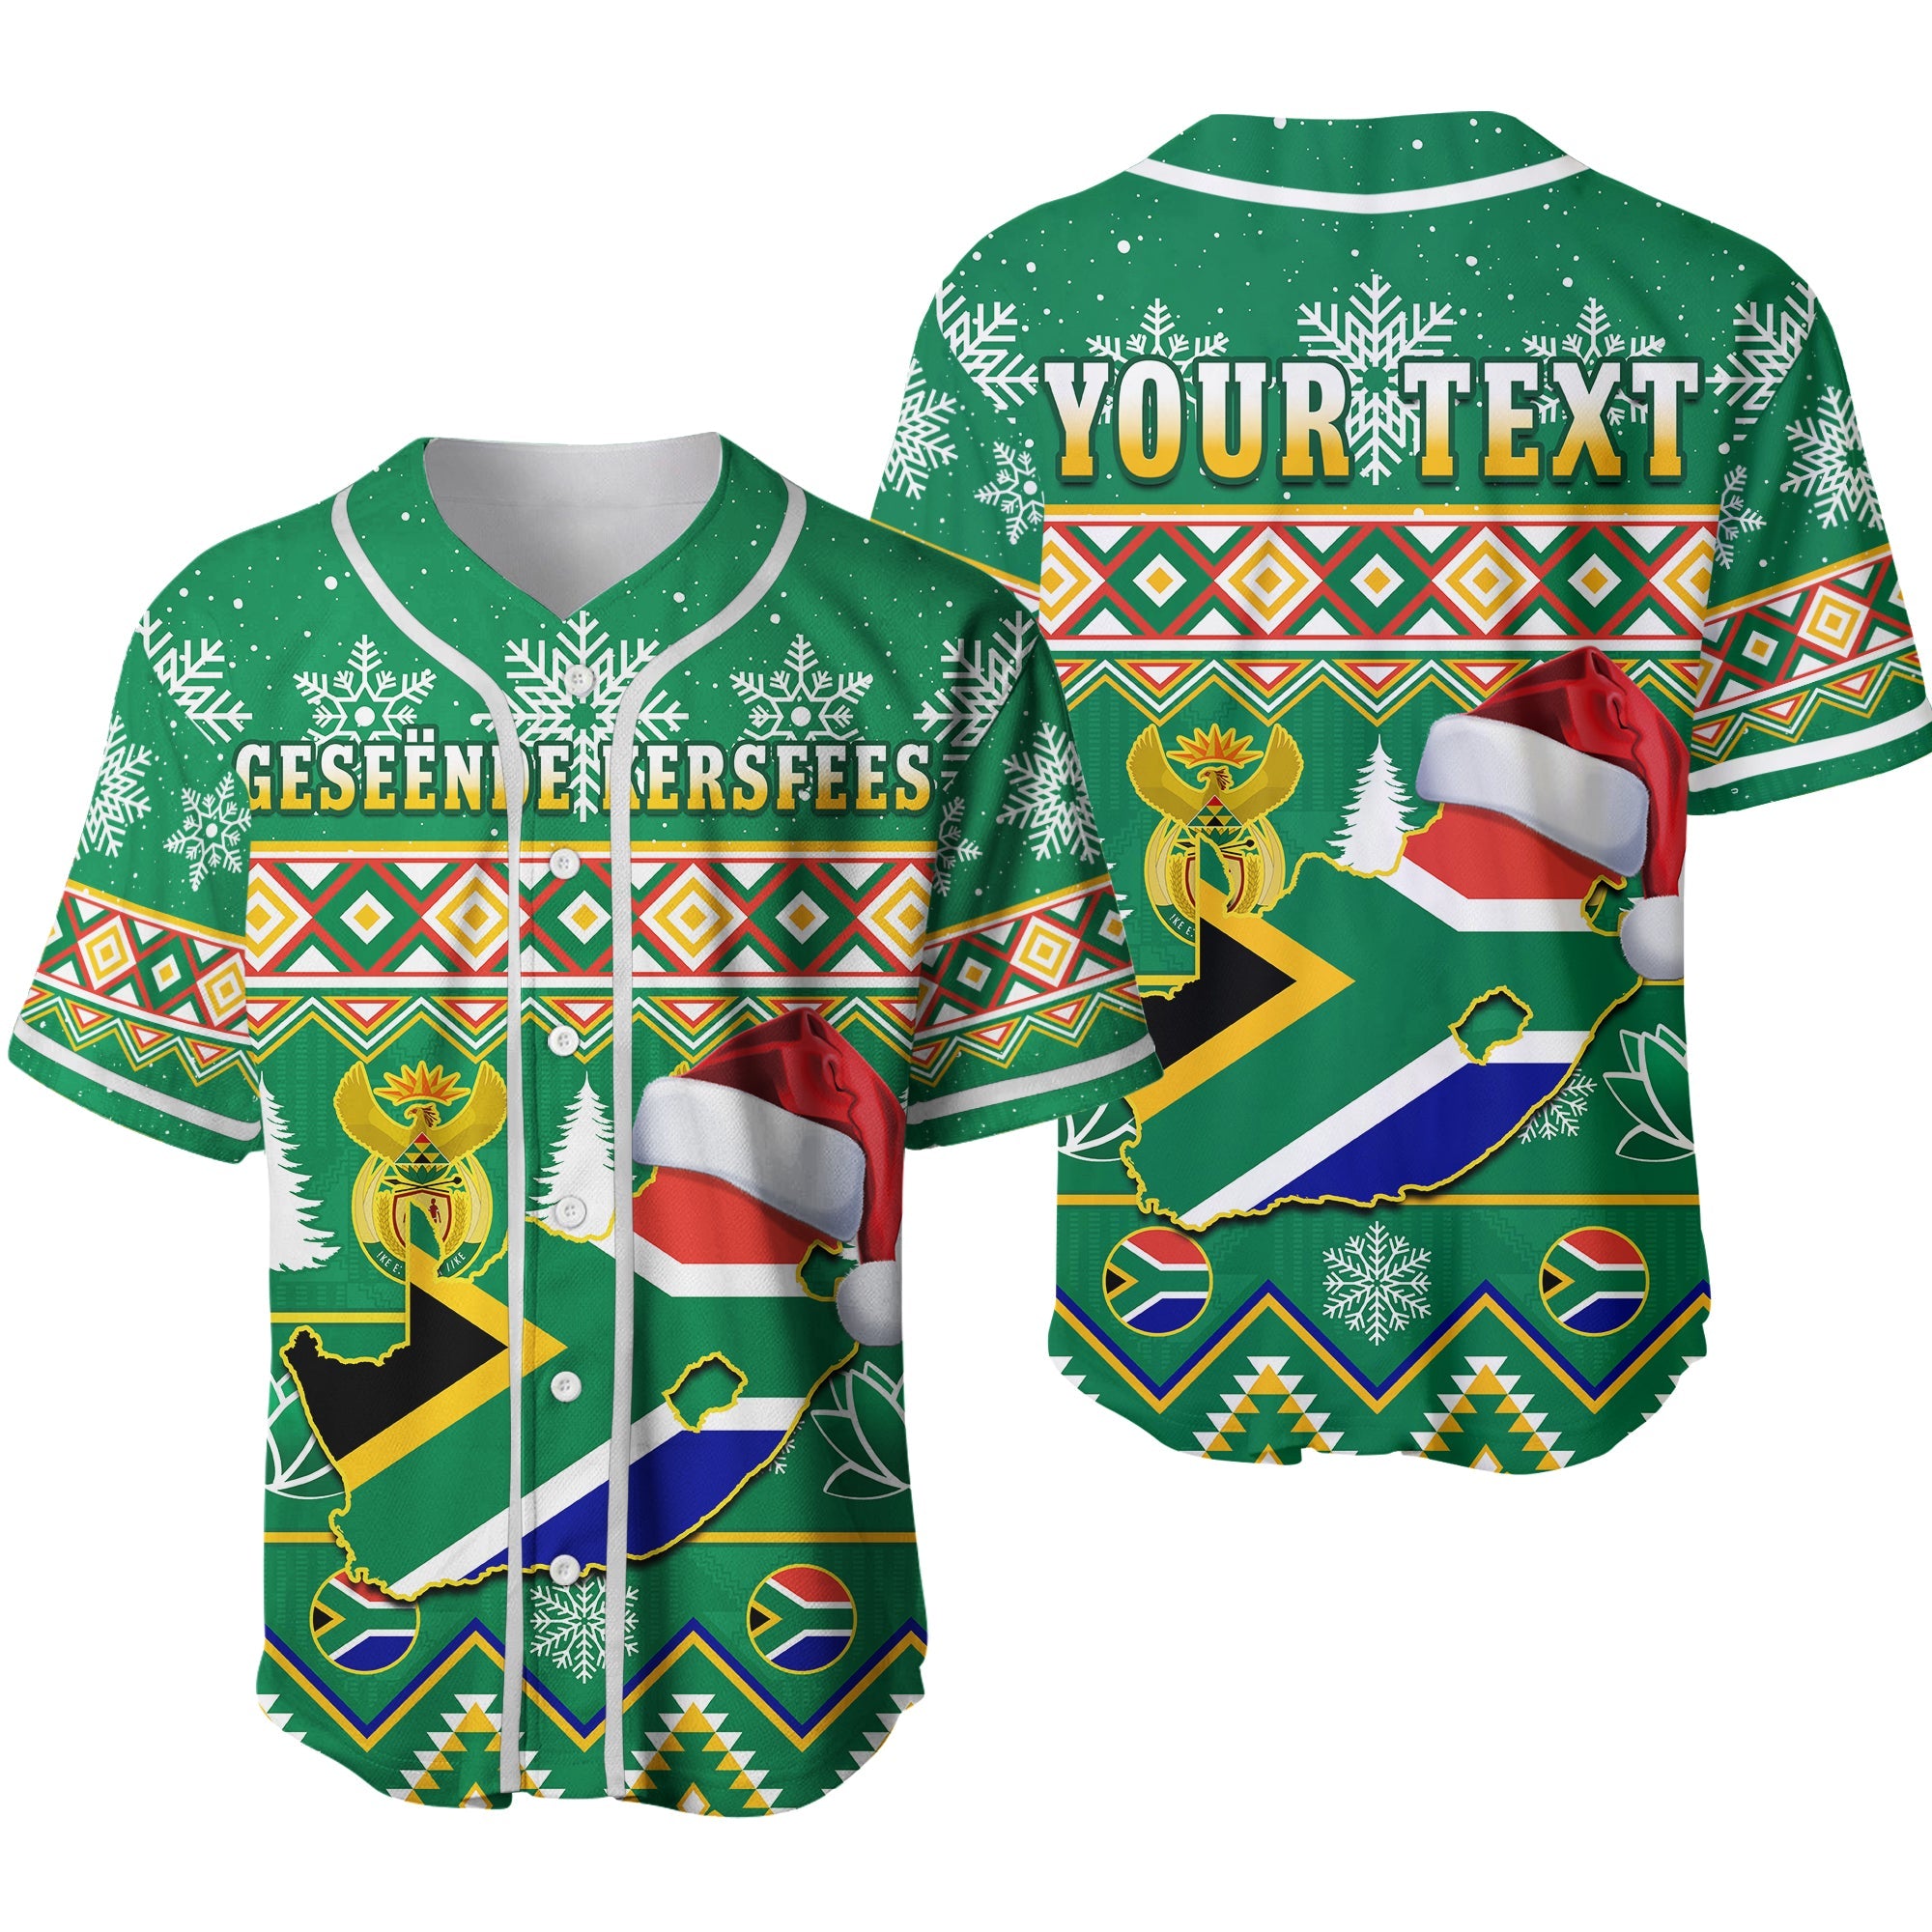 custom-personalised-south-africa-christmas-baseball-jersey-king-protea-geseende-kersfees-ver02